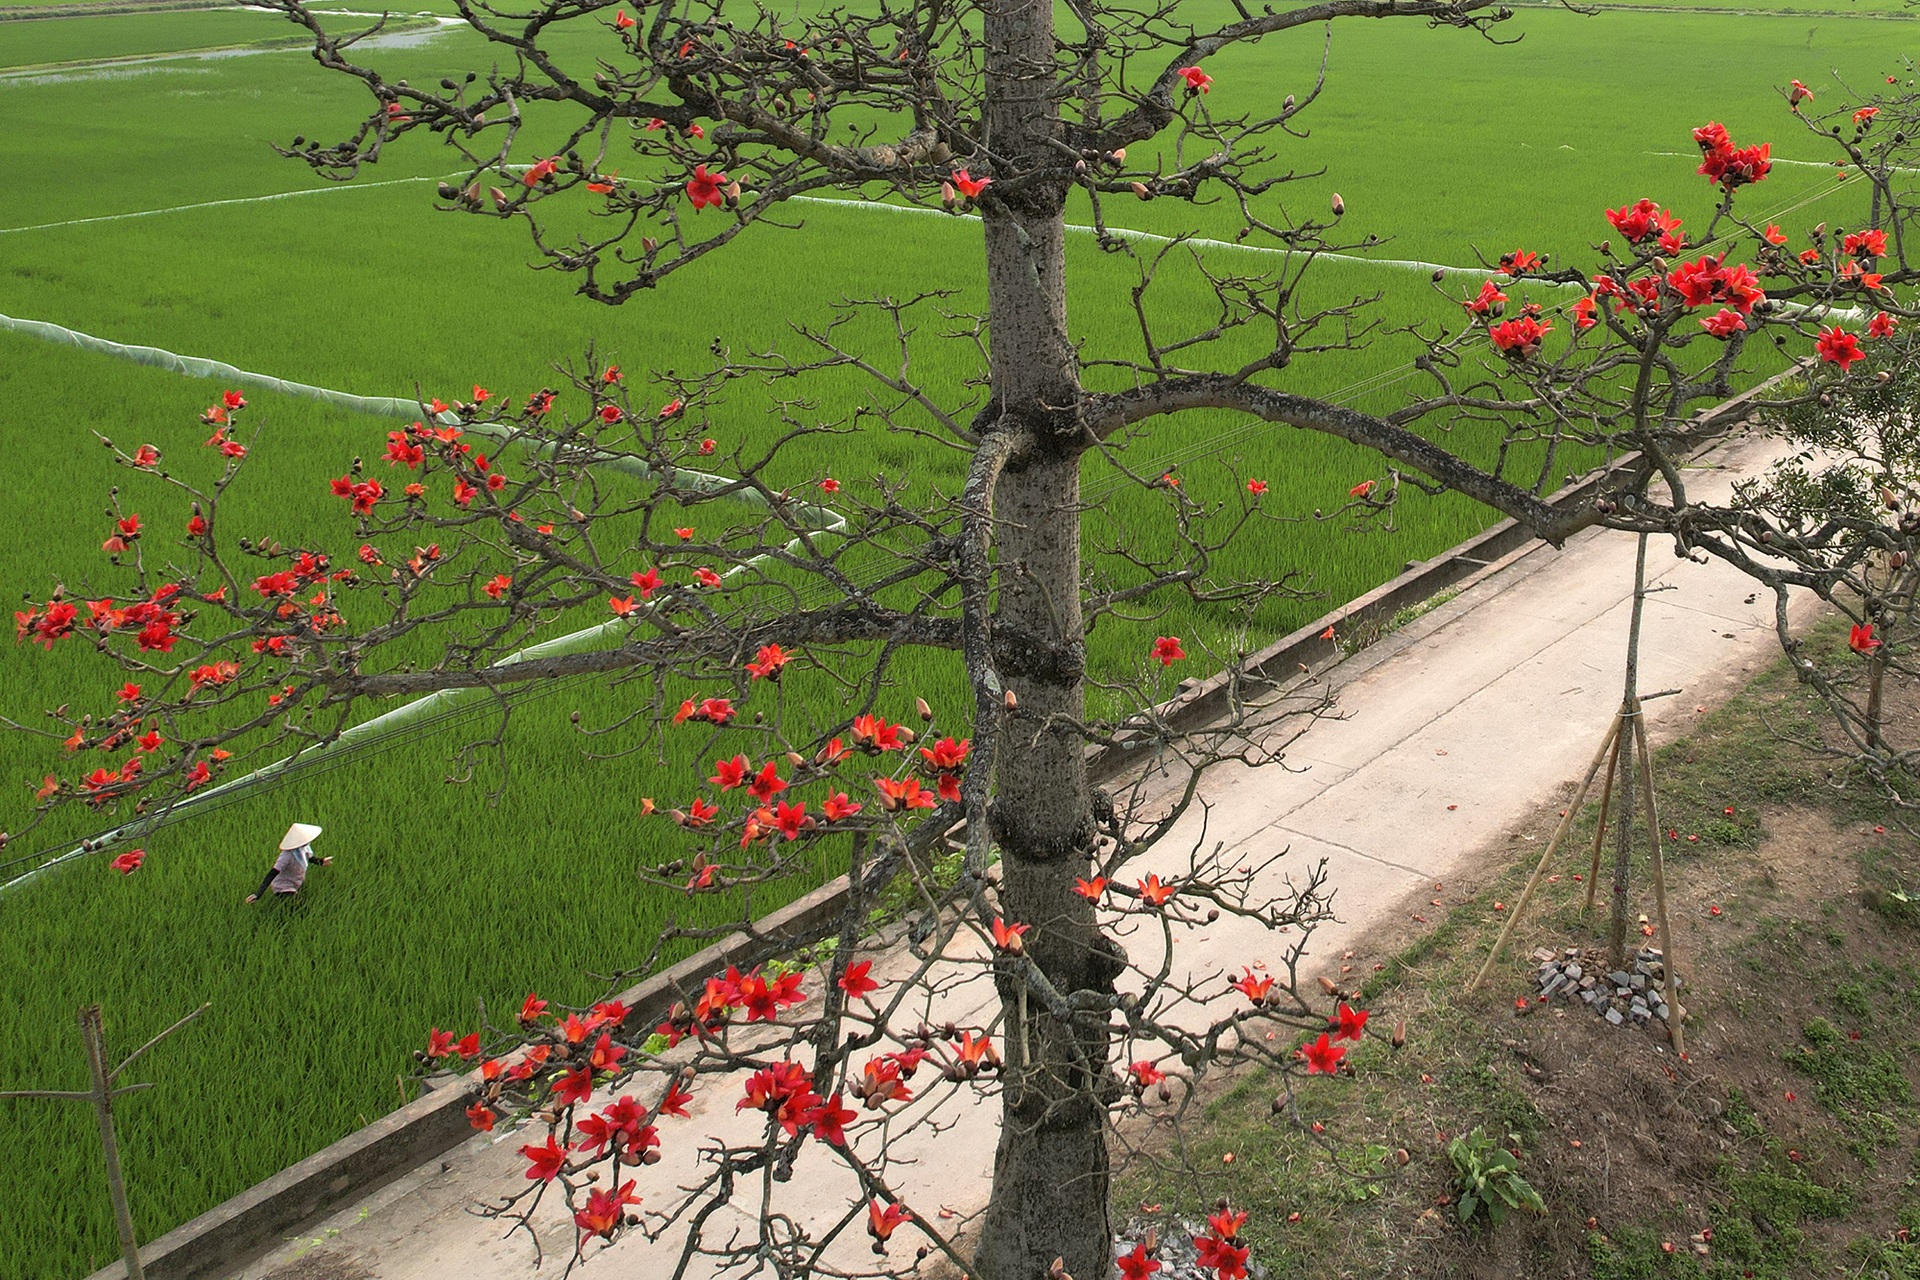 Hoa gạo nở đỏ rực từ nông thôn đến thành phố - 2